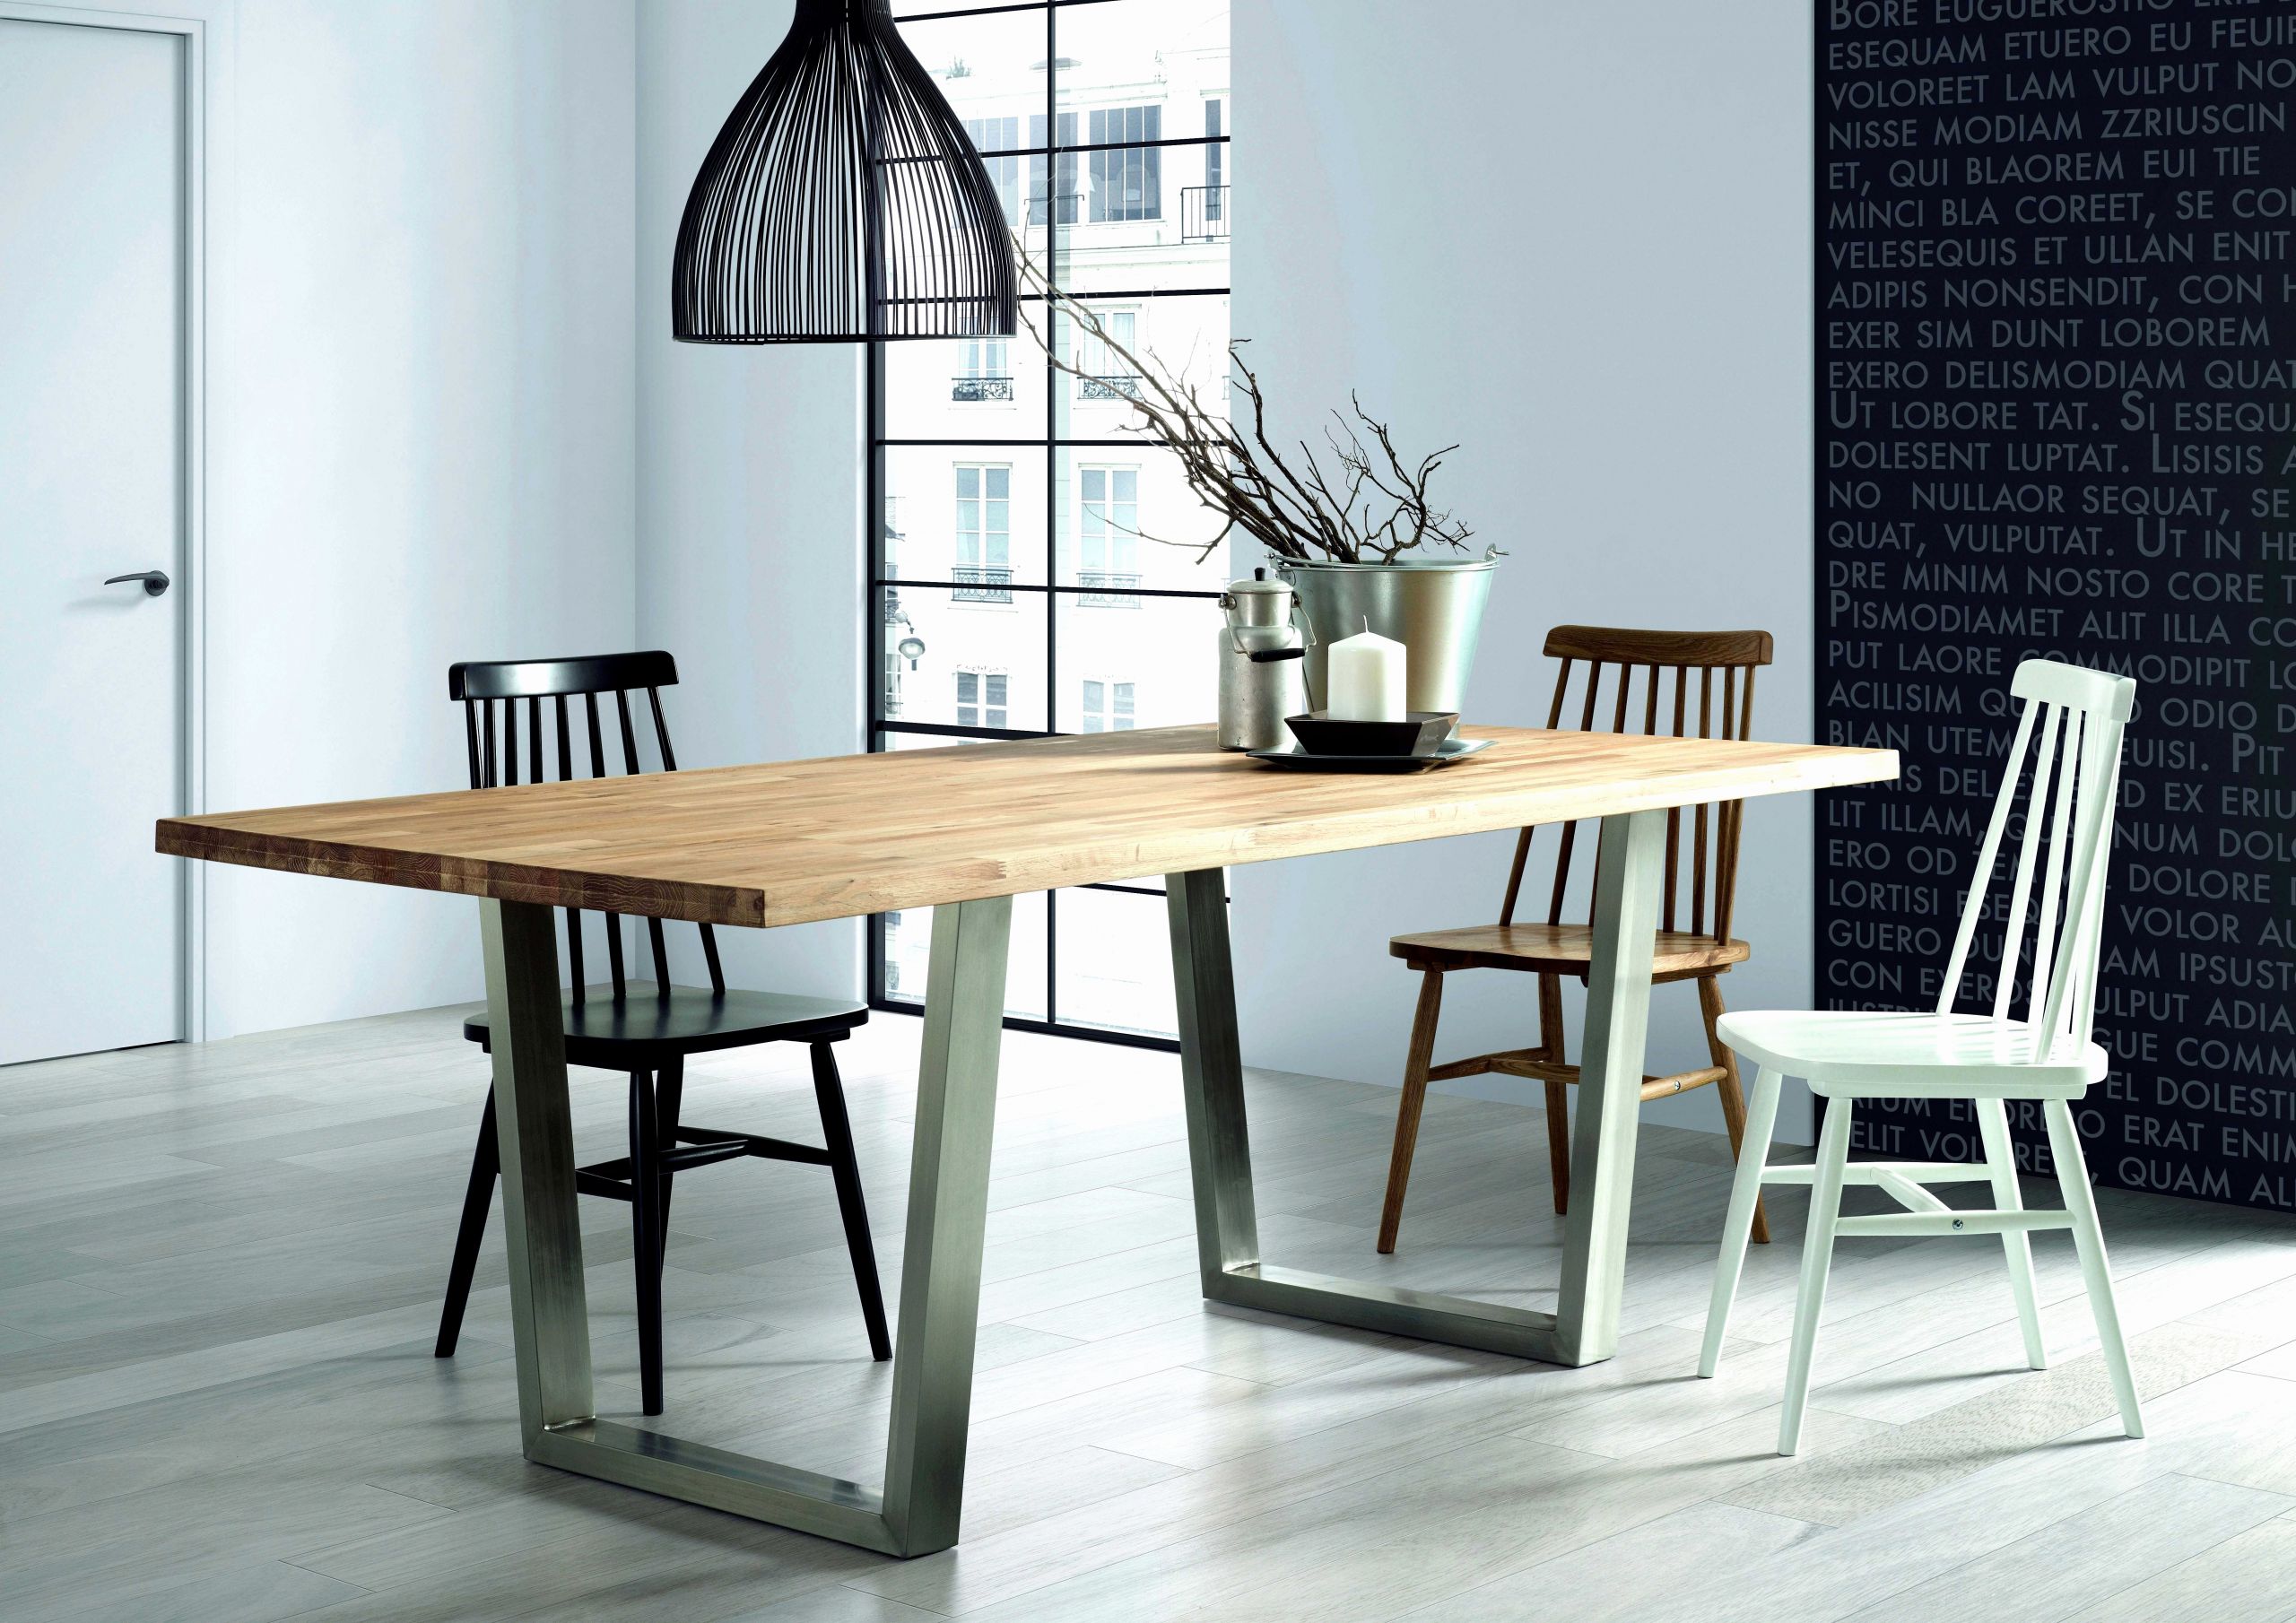 table basse contemporaine elegant table basse contemporaine design lesmeubles table salon conforama of table basse contemporaine